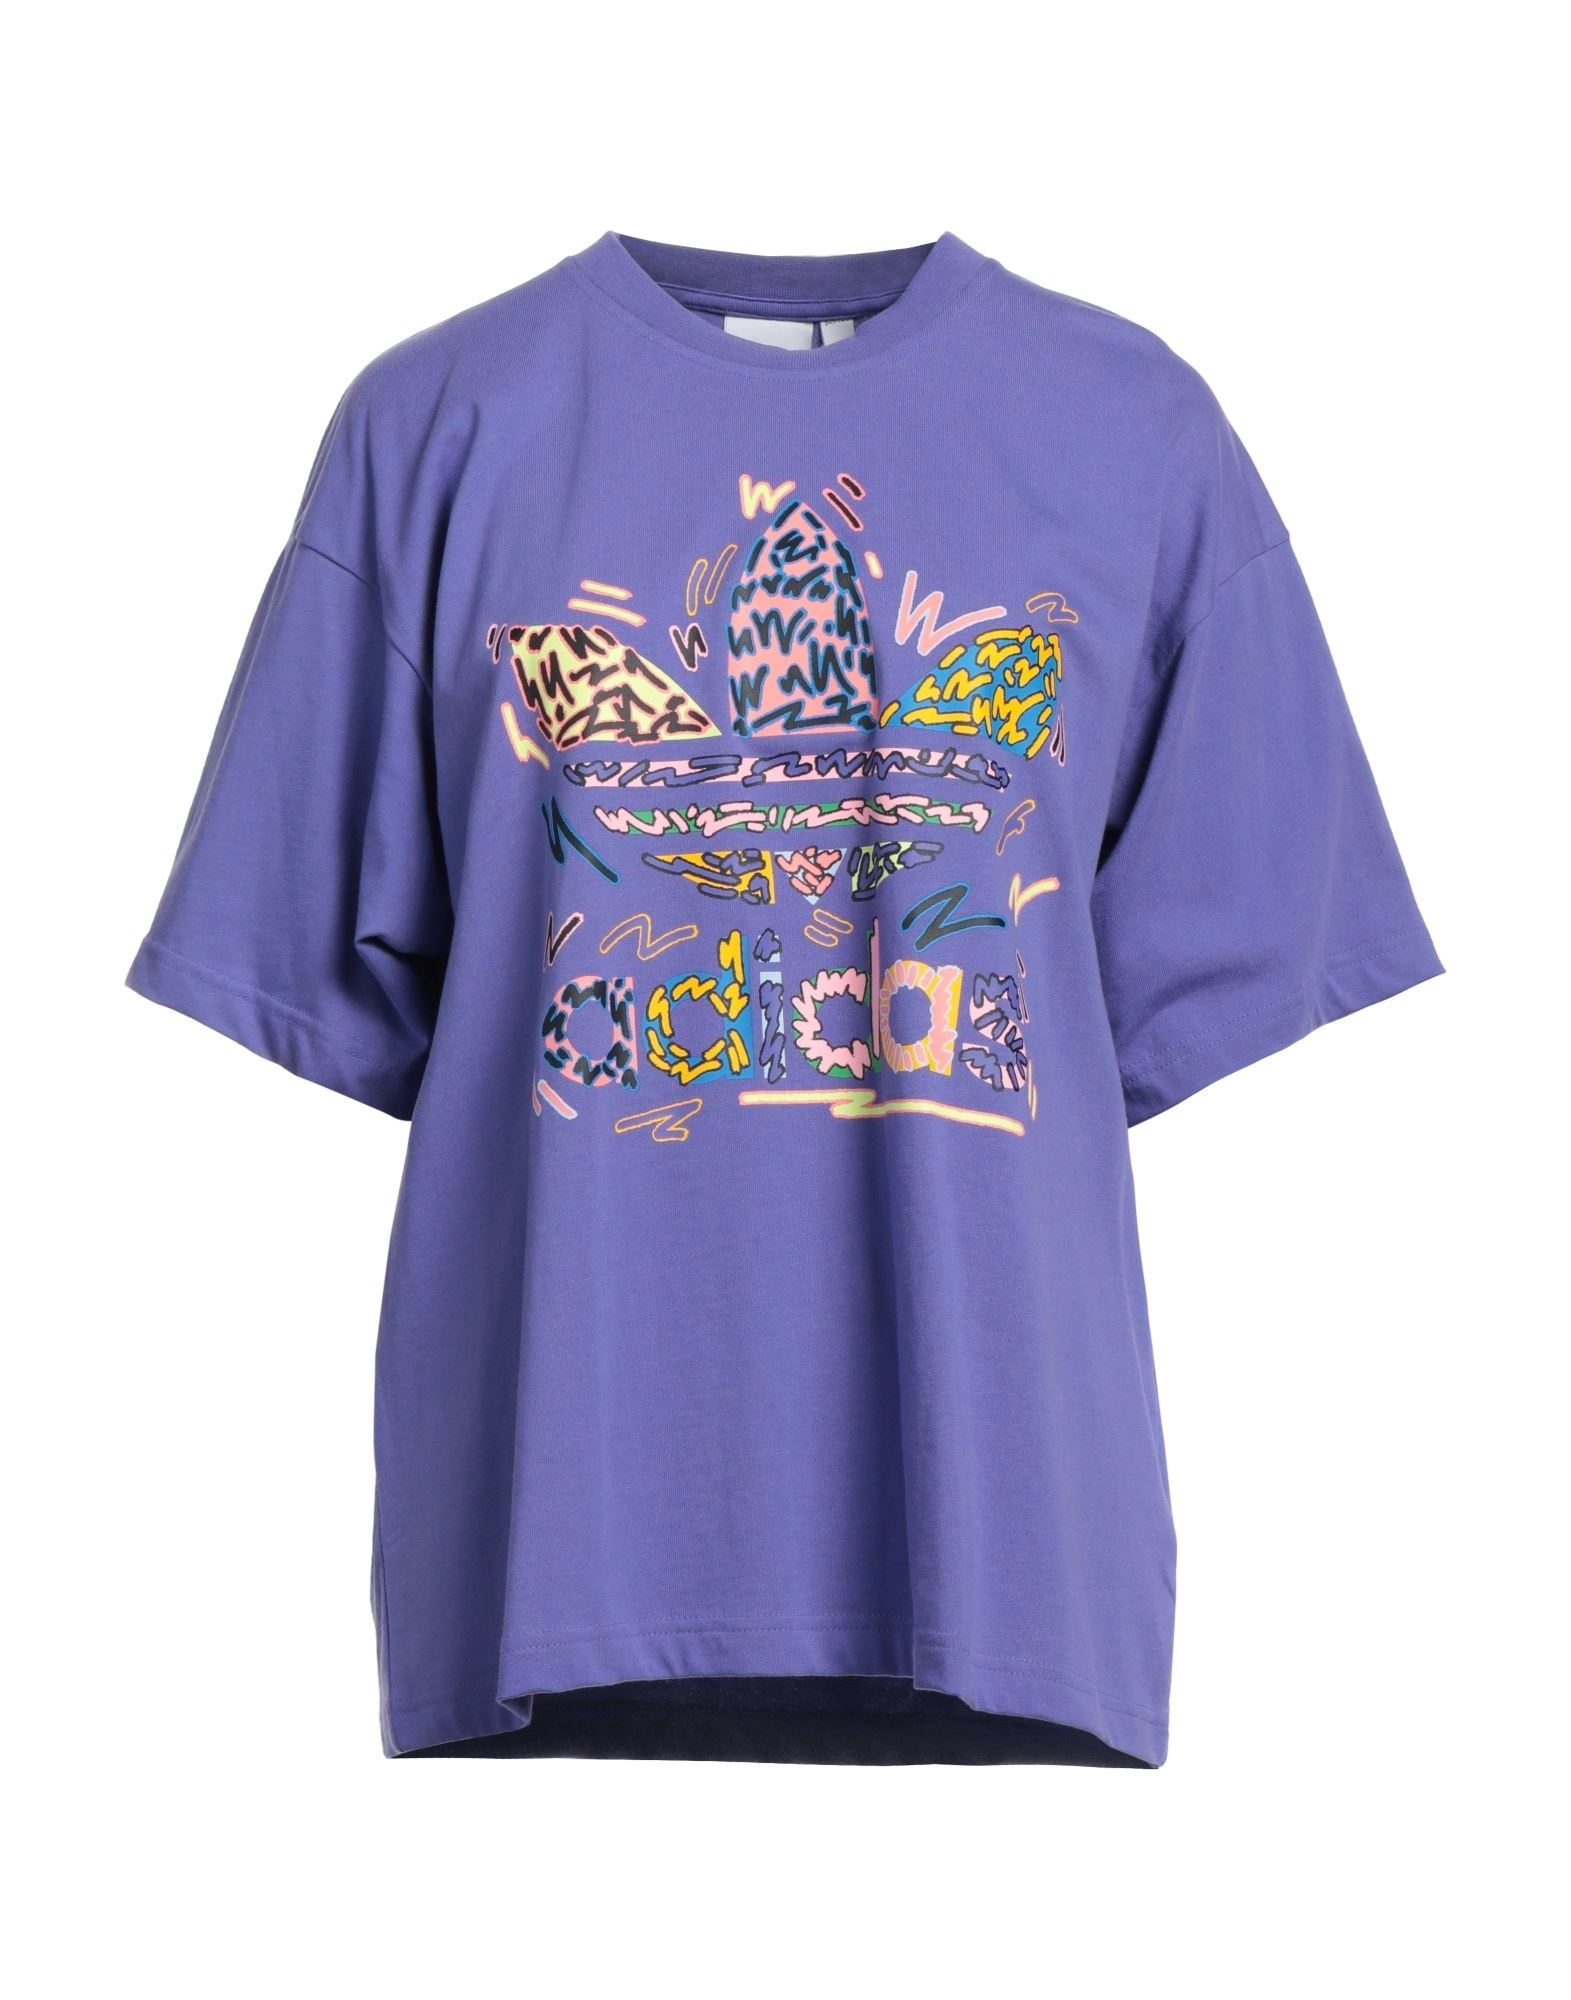 ADIDAS ORIGINALS T-shirts Damen Violett von ADIDAS ORIGINALS